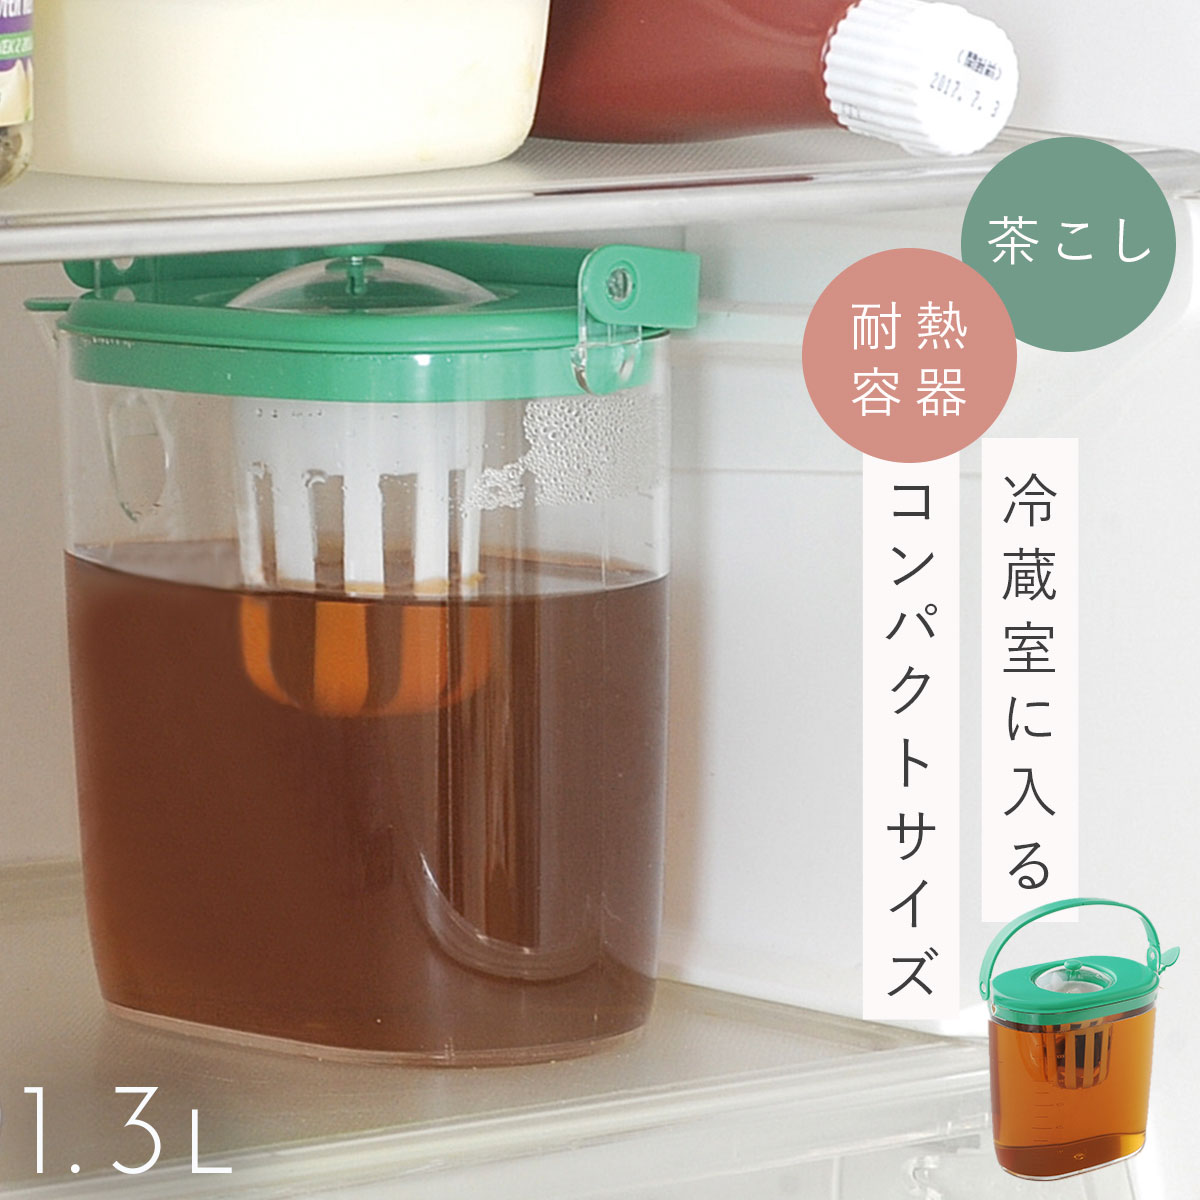 麦茶ポット 耐熱 冷水ポット 日本製 茶こし付き らくっ茶